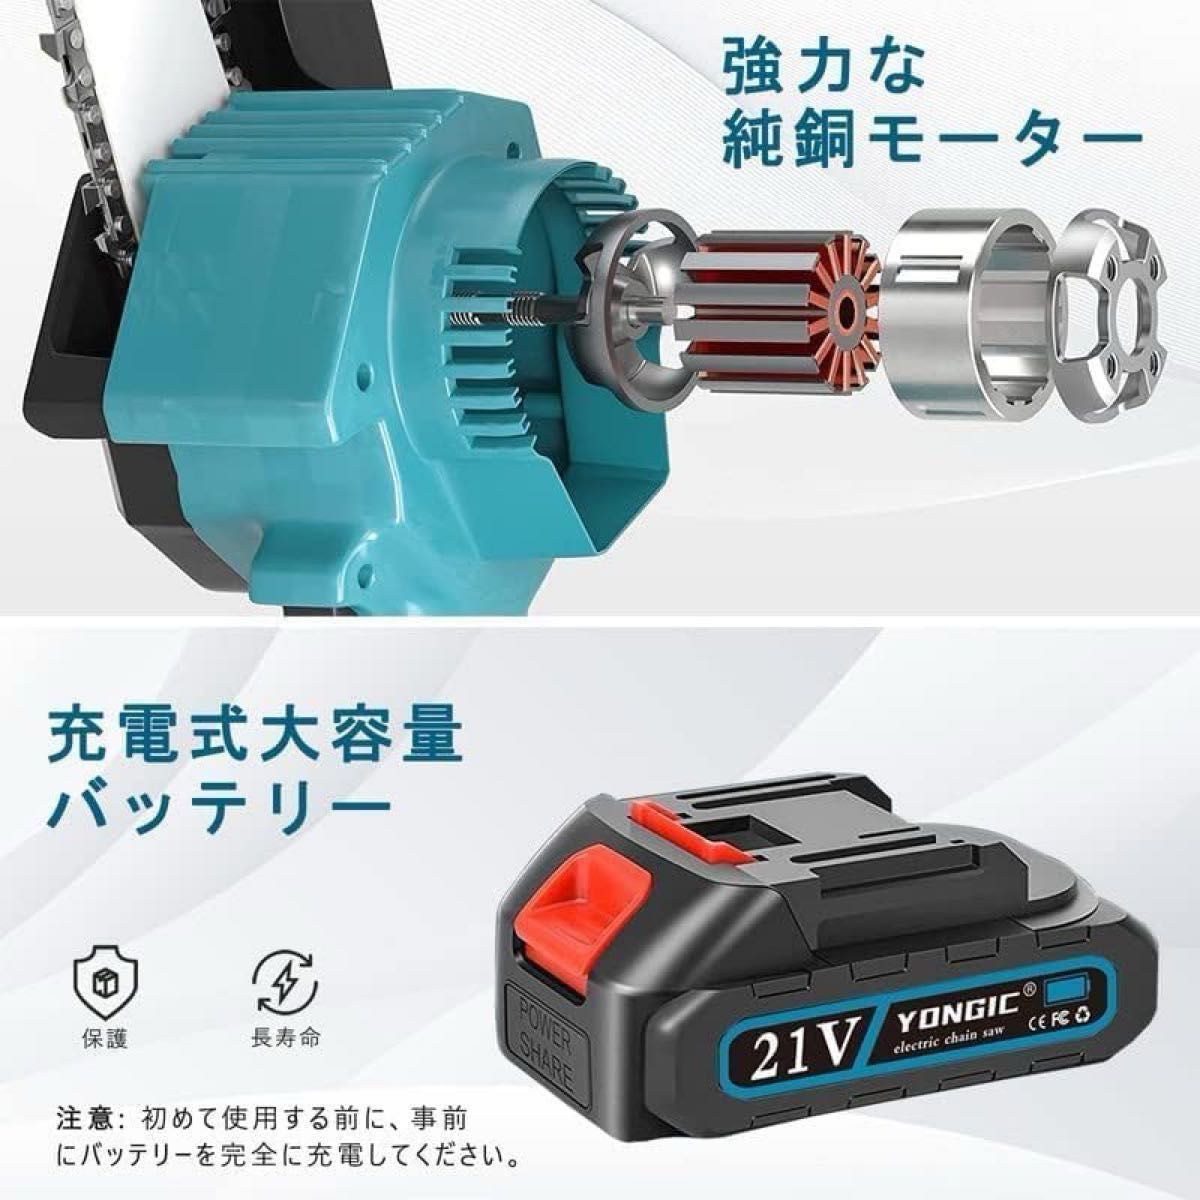 Yongic チェーンソー 電動チェーンソー 充電式 コードレスチェンソー 小型チェーンソー 電動プロのハンディチェーンソー 軽量